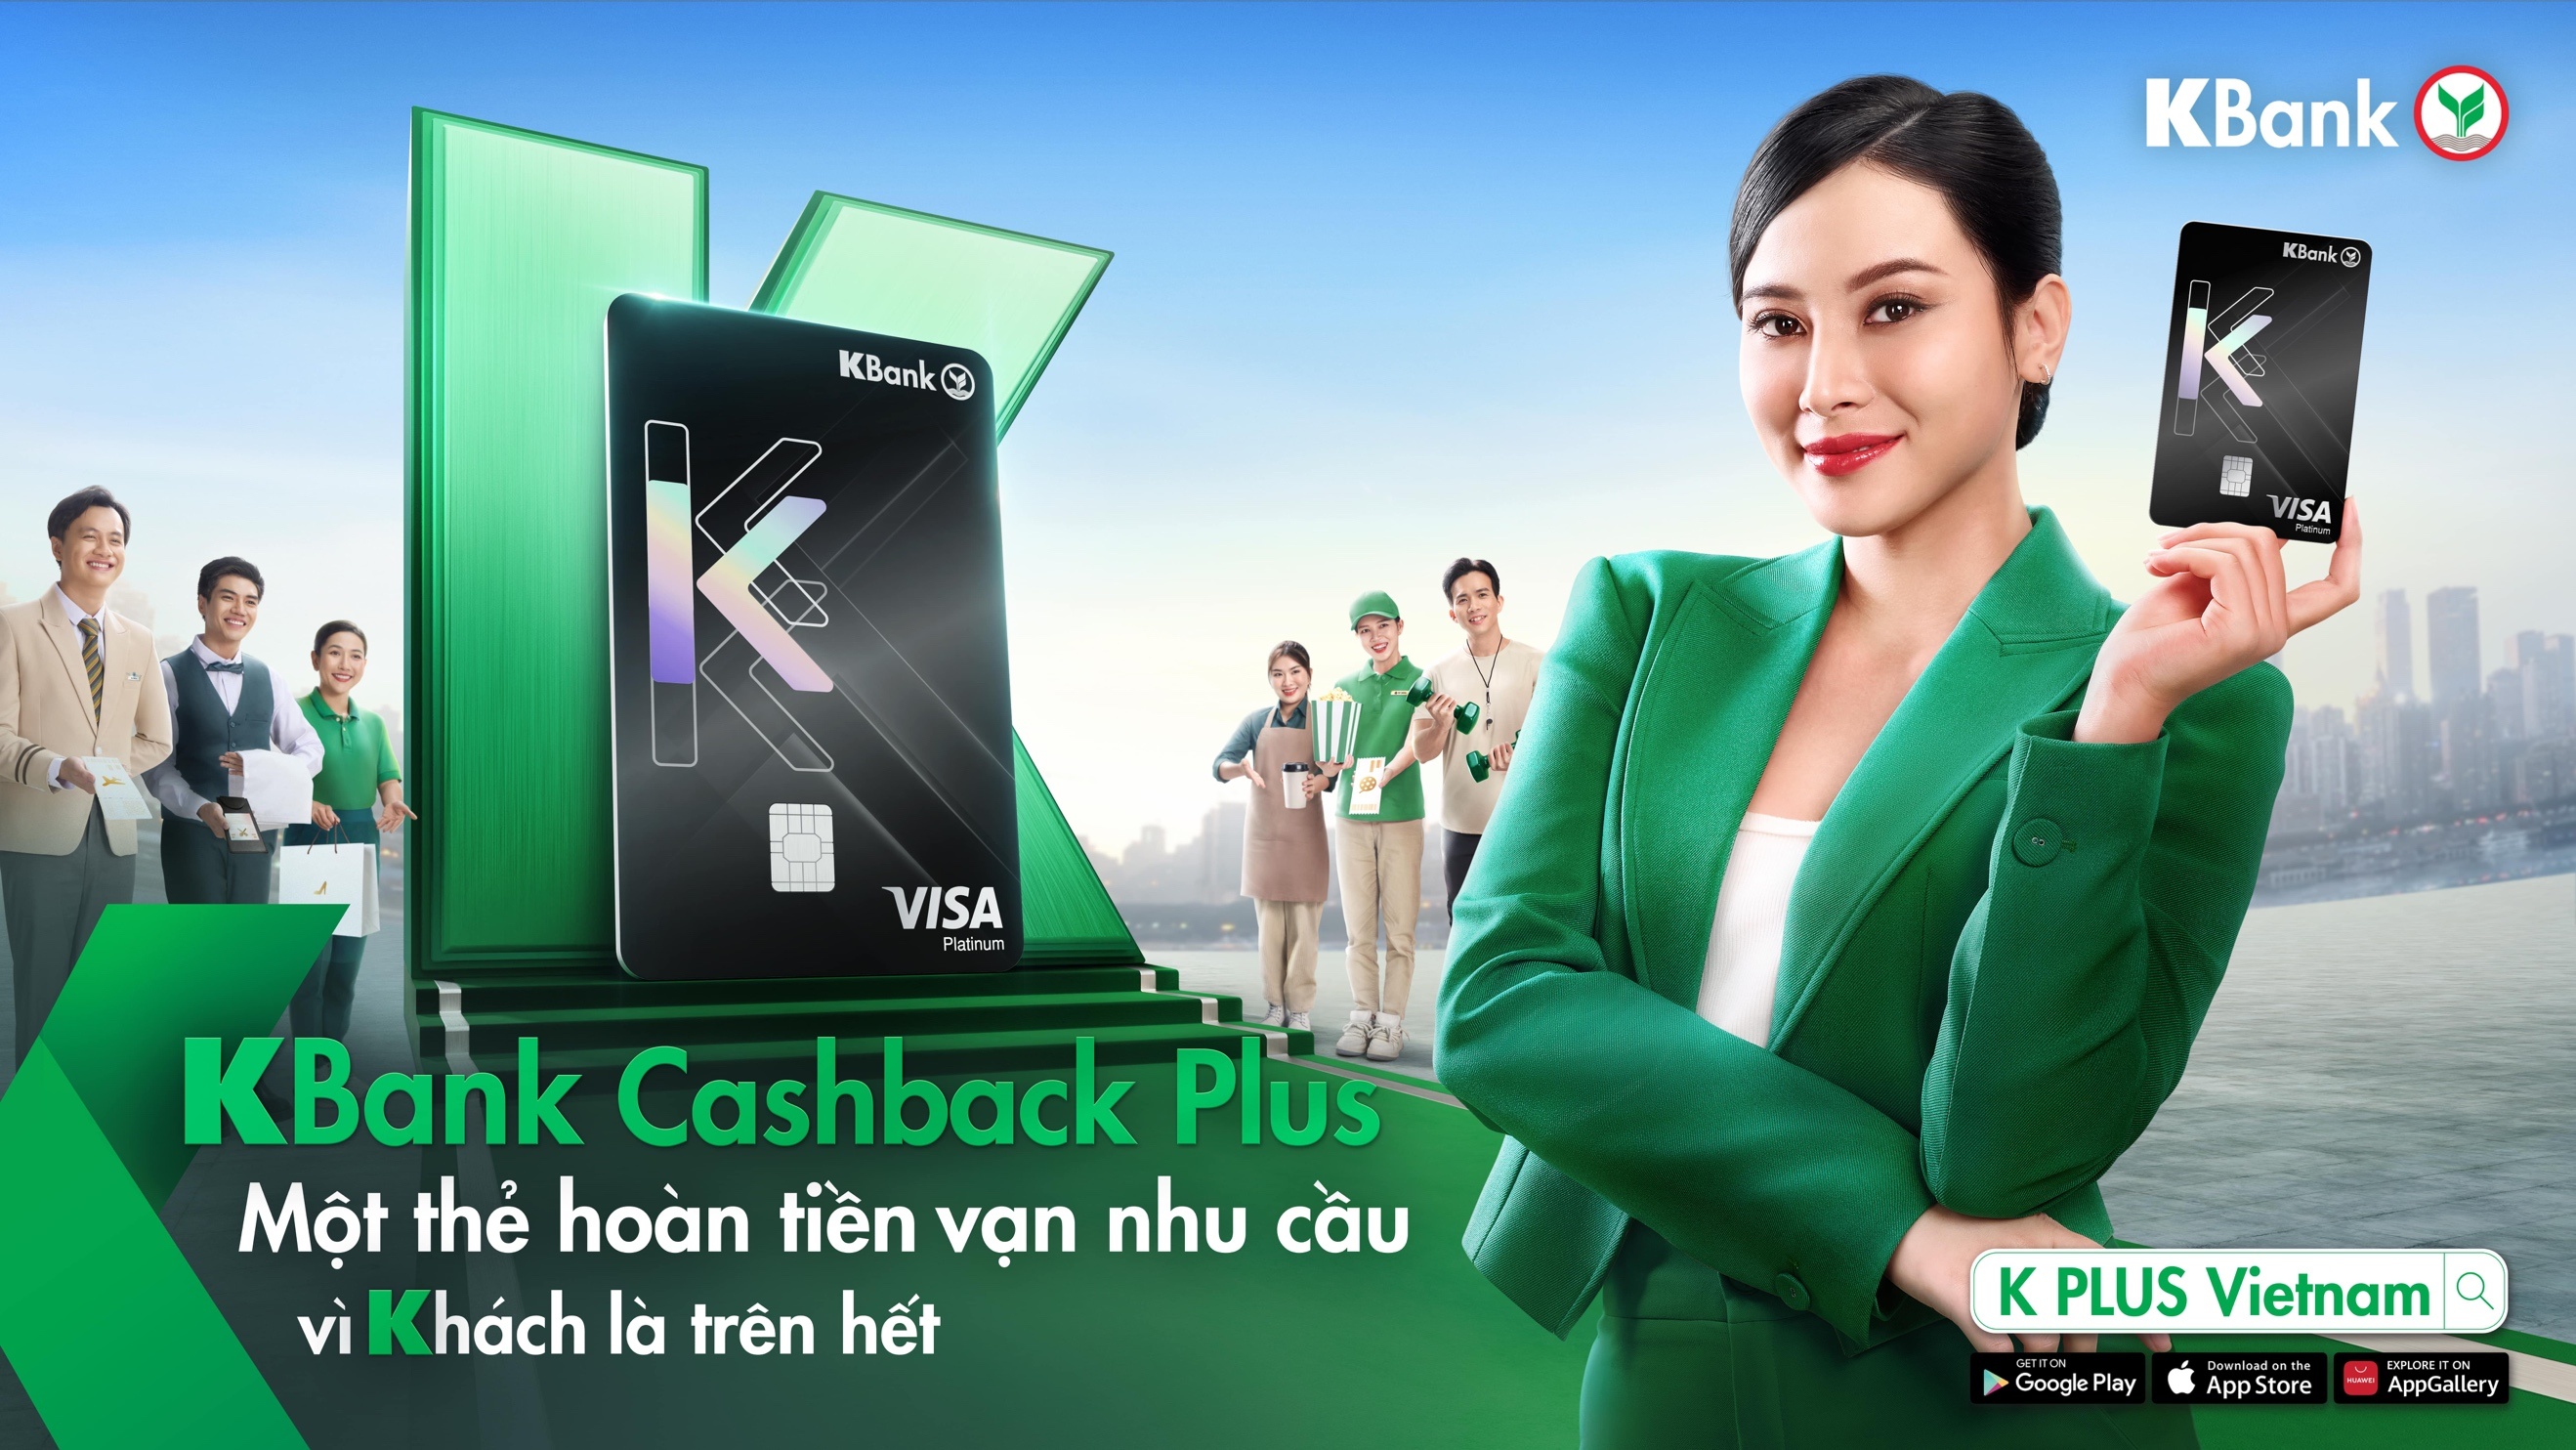 KBank Cashback Plus – Sản phẩm mới của KBank tại thị trường Việt Nam